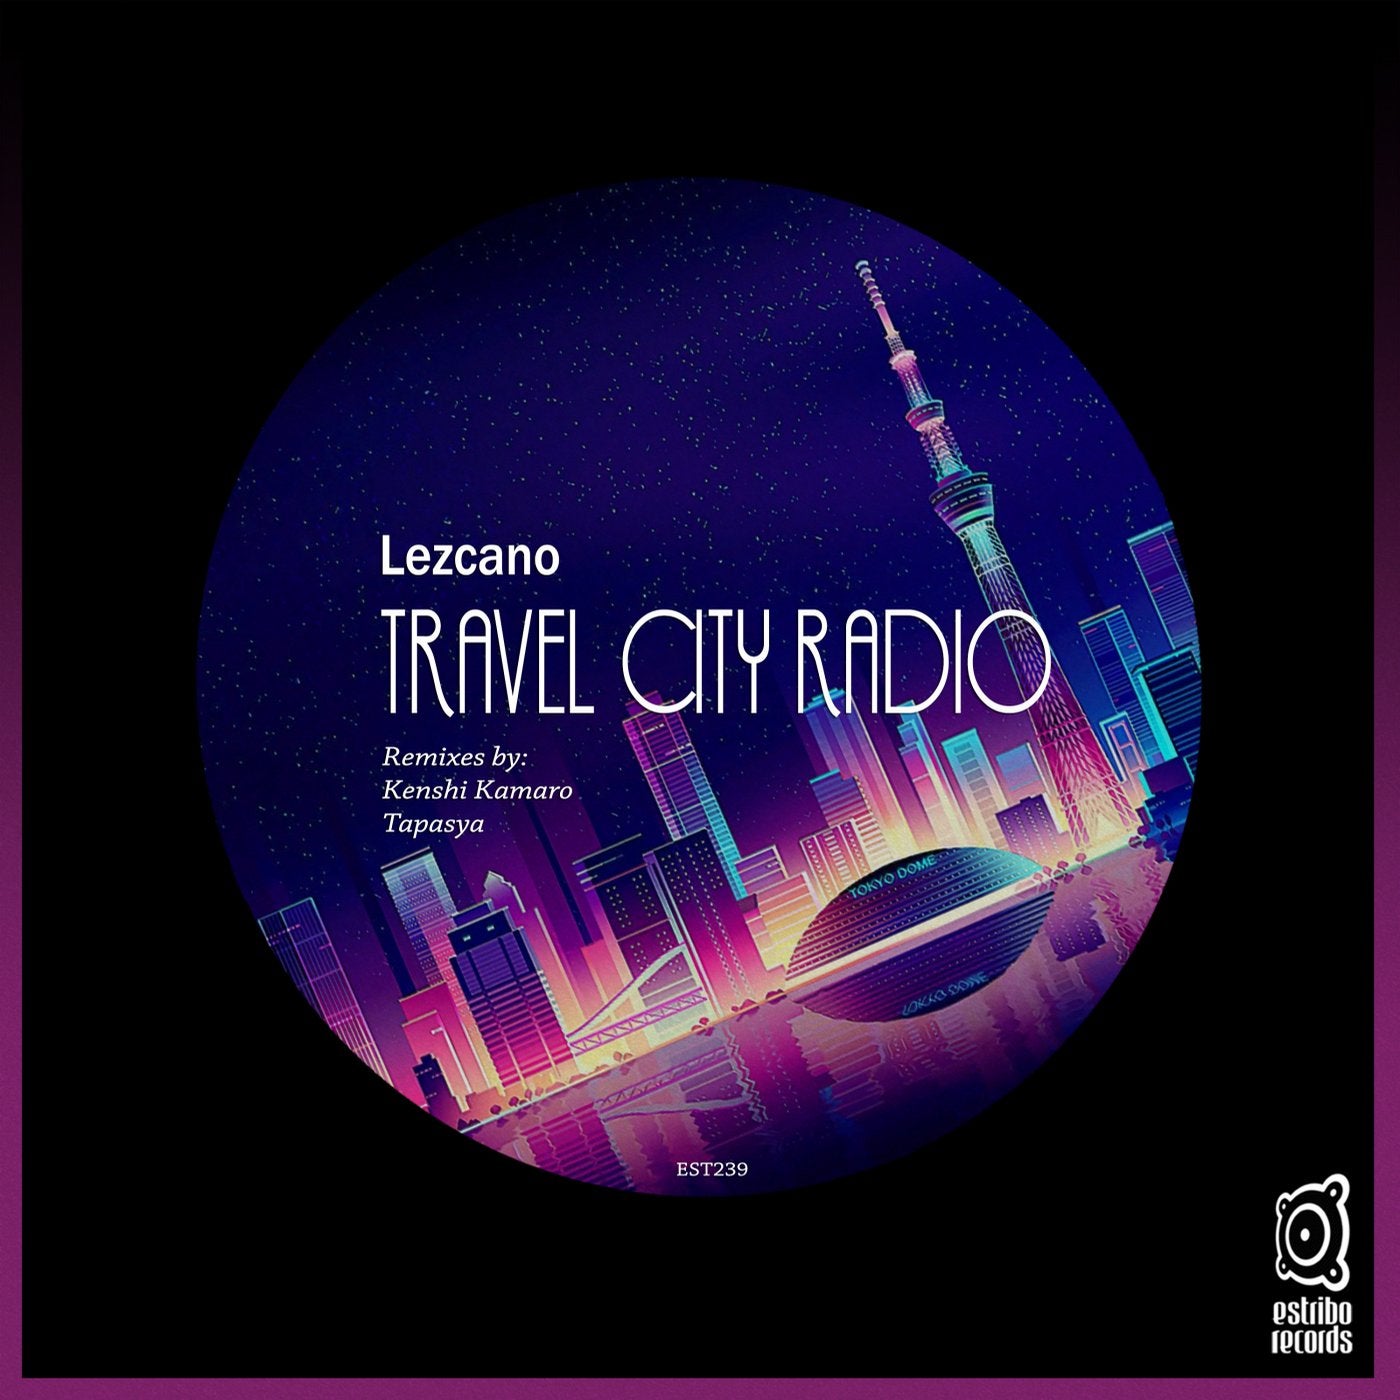 Travel City Radio